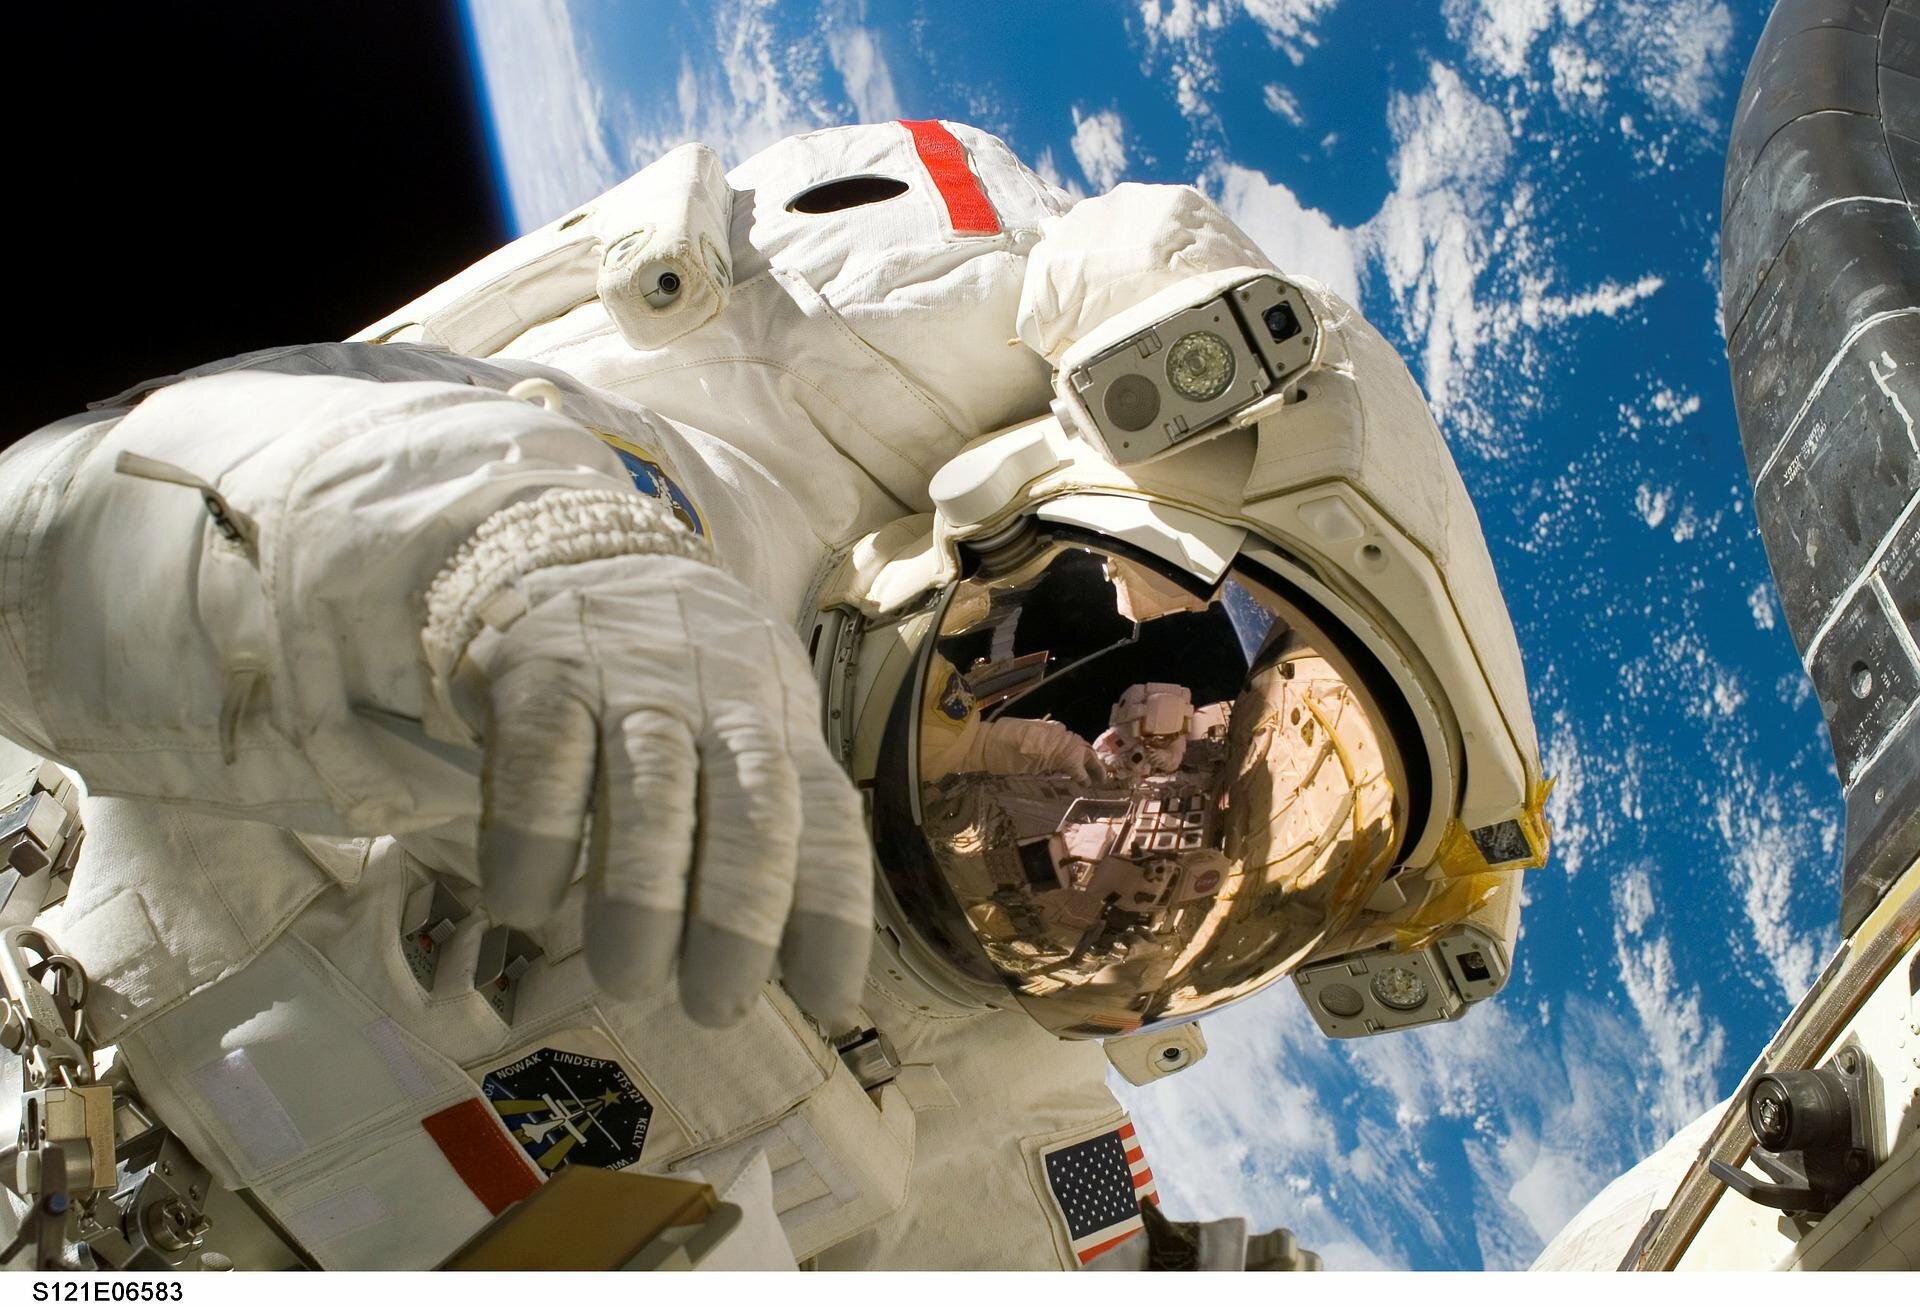 Die Herstellung von Sauerstoff mit Magneten könnte Astronauten helfen, leichter zu atmen